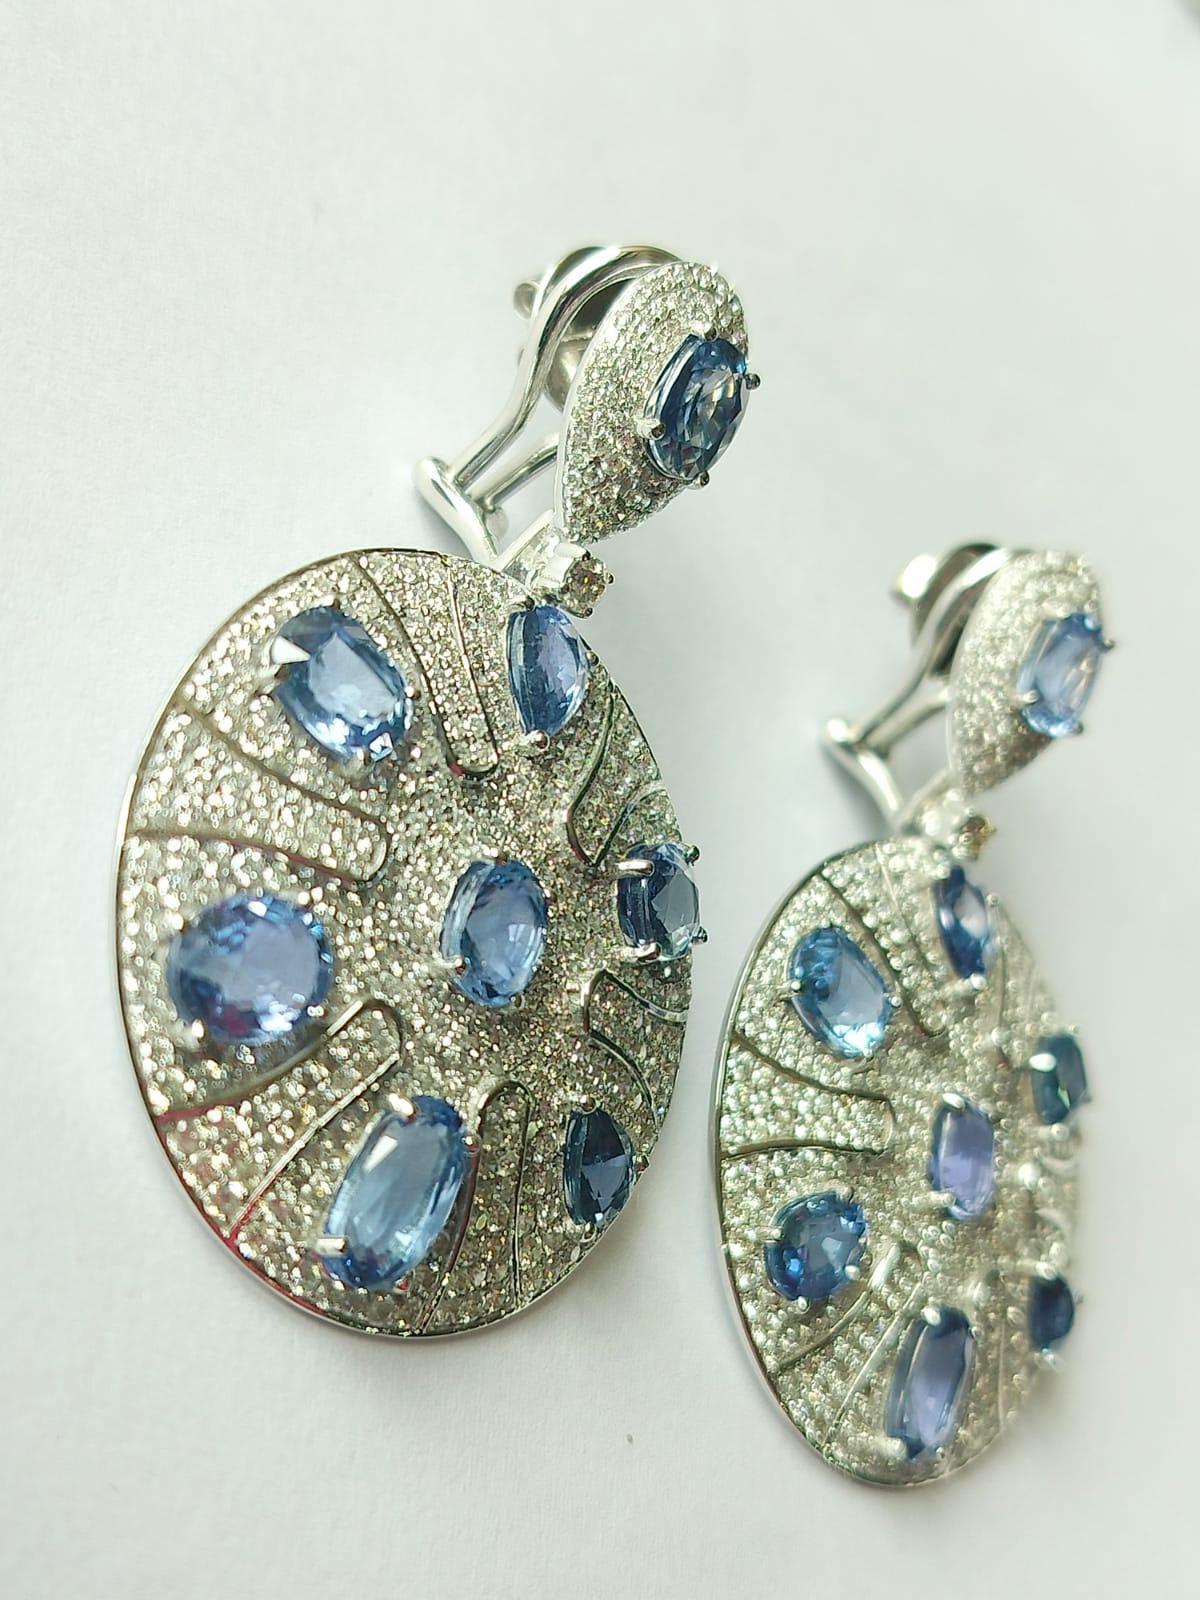 Ein sehr schöner und schicker Ohrring mit blauem Saphir aus 18 Karat Weißgold und Diamanten. Das Gewicht der blauen Saphir-Ovale beträgt 16,84 Karat. Die Saphire sind ceylonesischen (srilankischen) Ursprungs. Das Gewicht der Diamanten beträgt 6,13